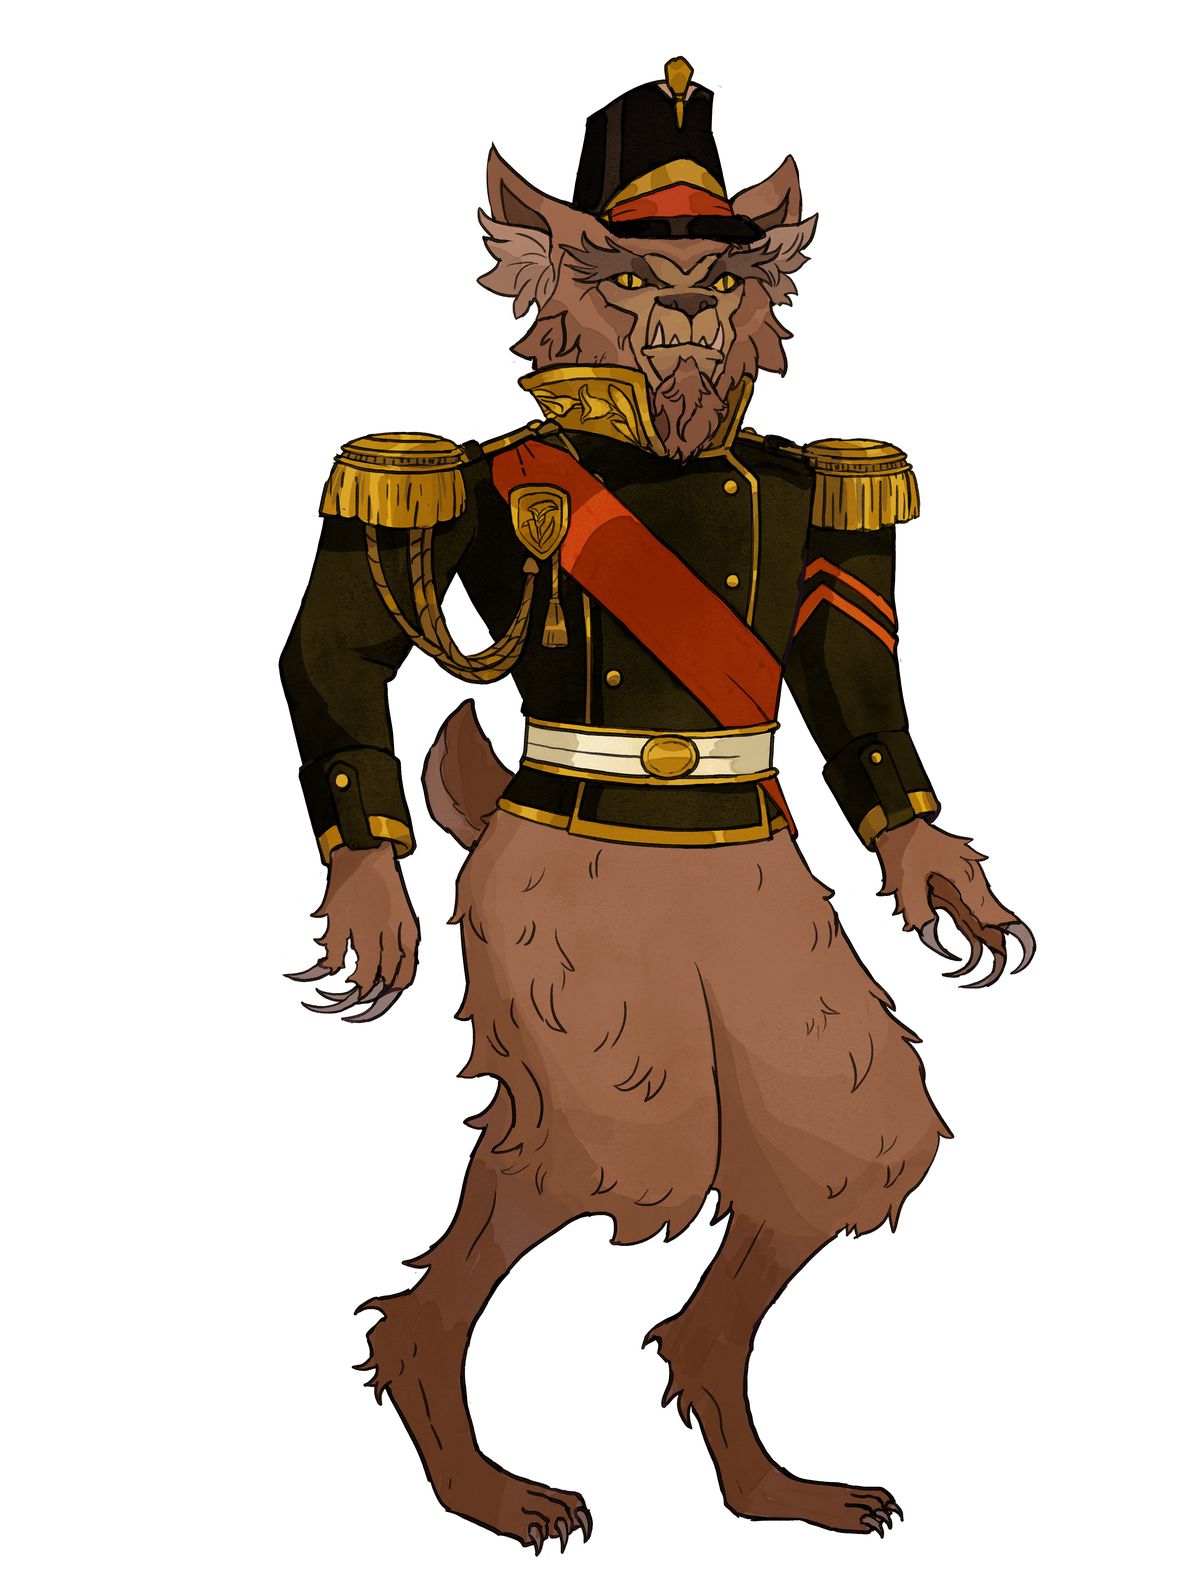 Un orso gufo vestito con abiti militari.  I suoi artigli sono immacolati, così come la sua fascia rossa.  Non ha pantaloni.